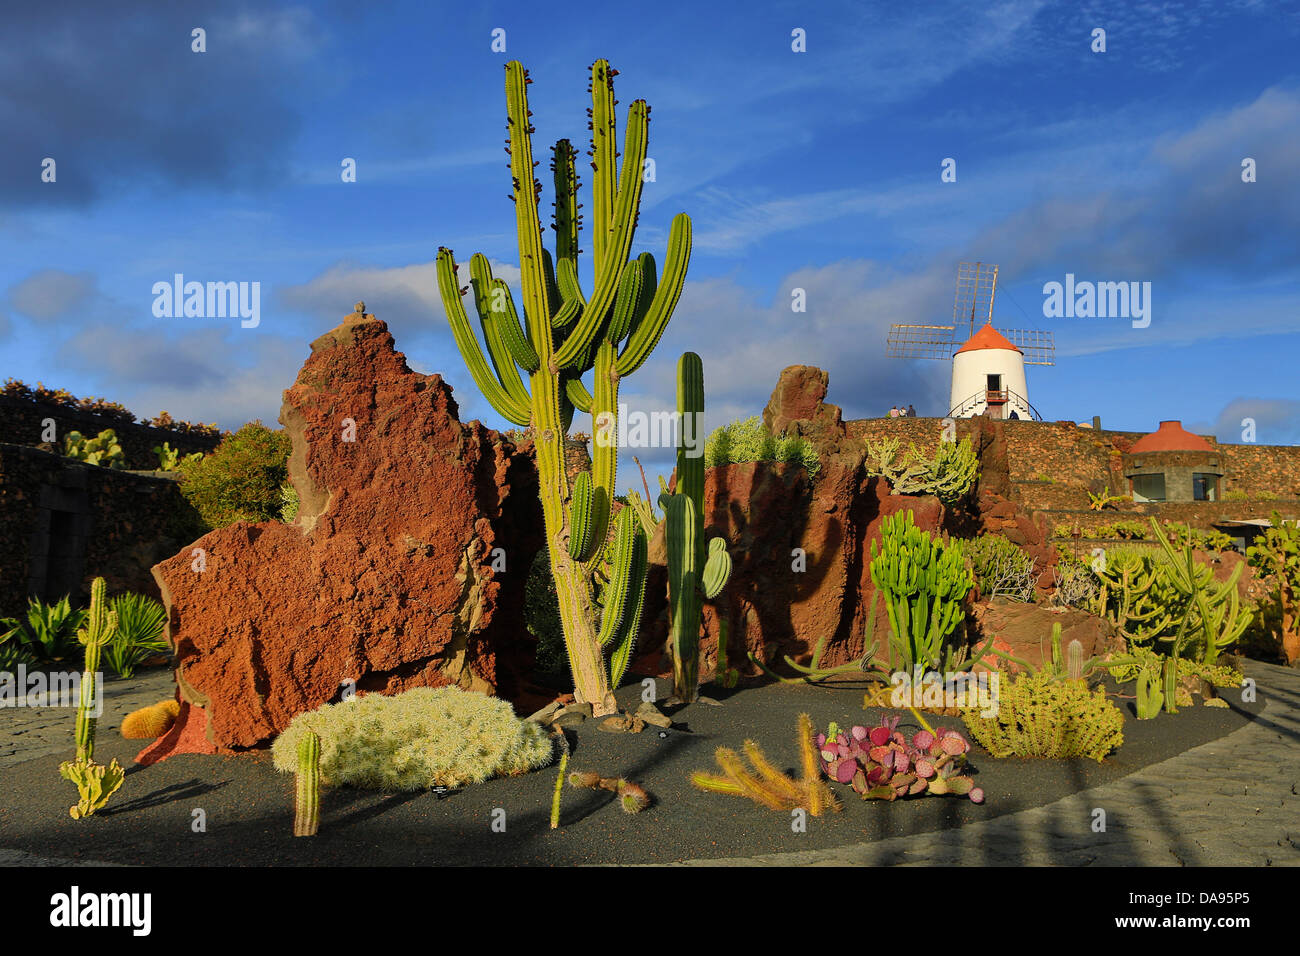 L'Espagne, Europe, Îles Canaries, Guatiza, Lanzarote, cactus, plantes, jardin, île, coucher du soleil, éolienne Banque D'Images